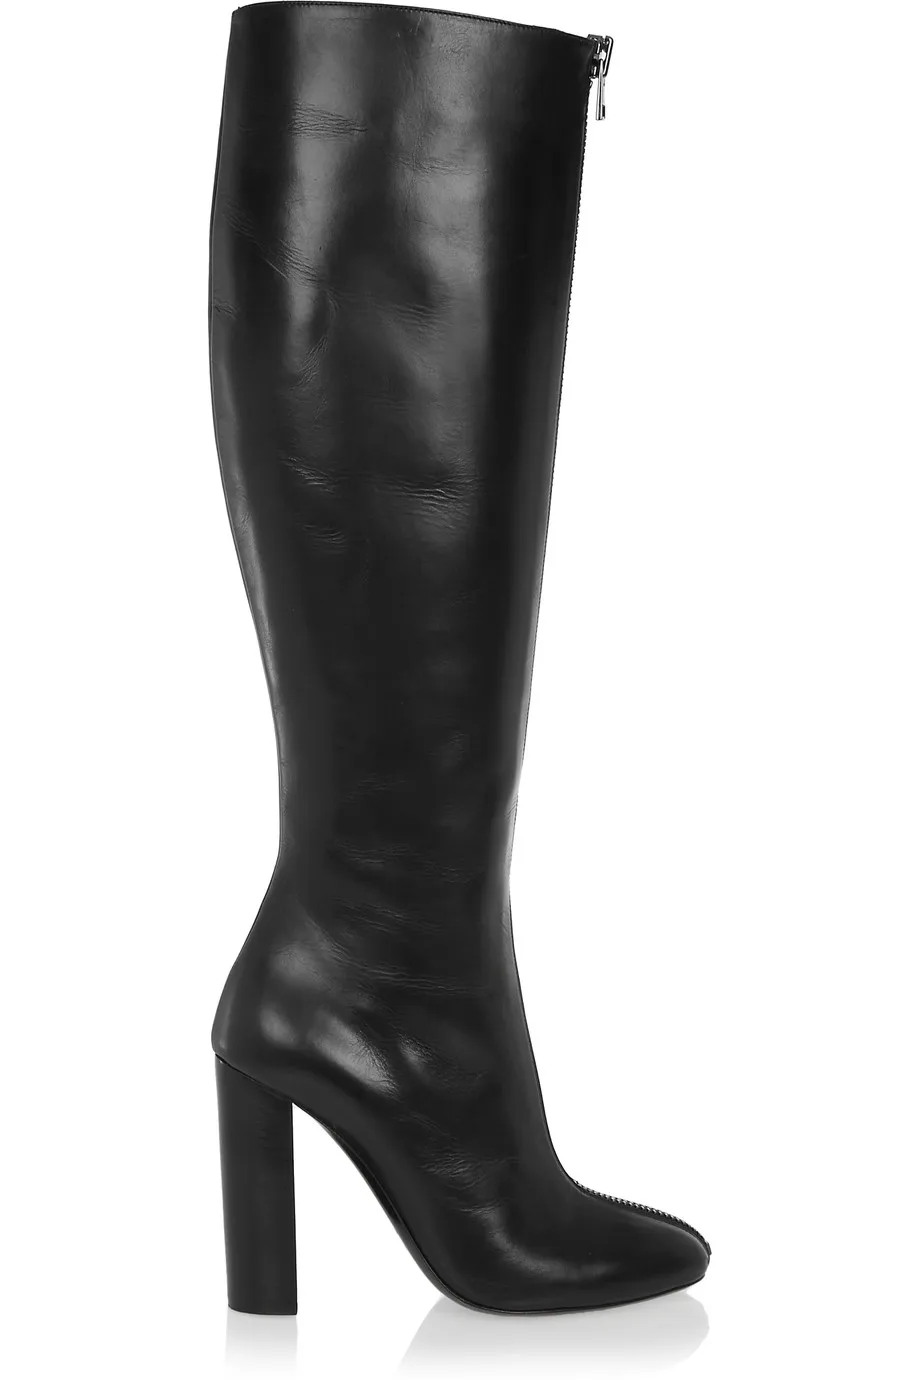 Женские ботинки; сапоги до колена из натуральной кожи с круглым носком; женская обувь на не сужающемся книзу массивном каблуке с молнией спереди; цвет черный, бежевый; Aimirlly - Цвет: Black